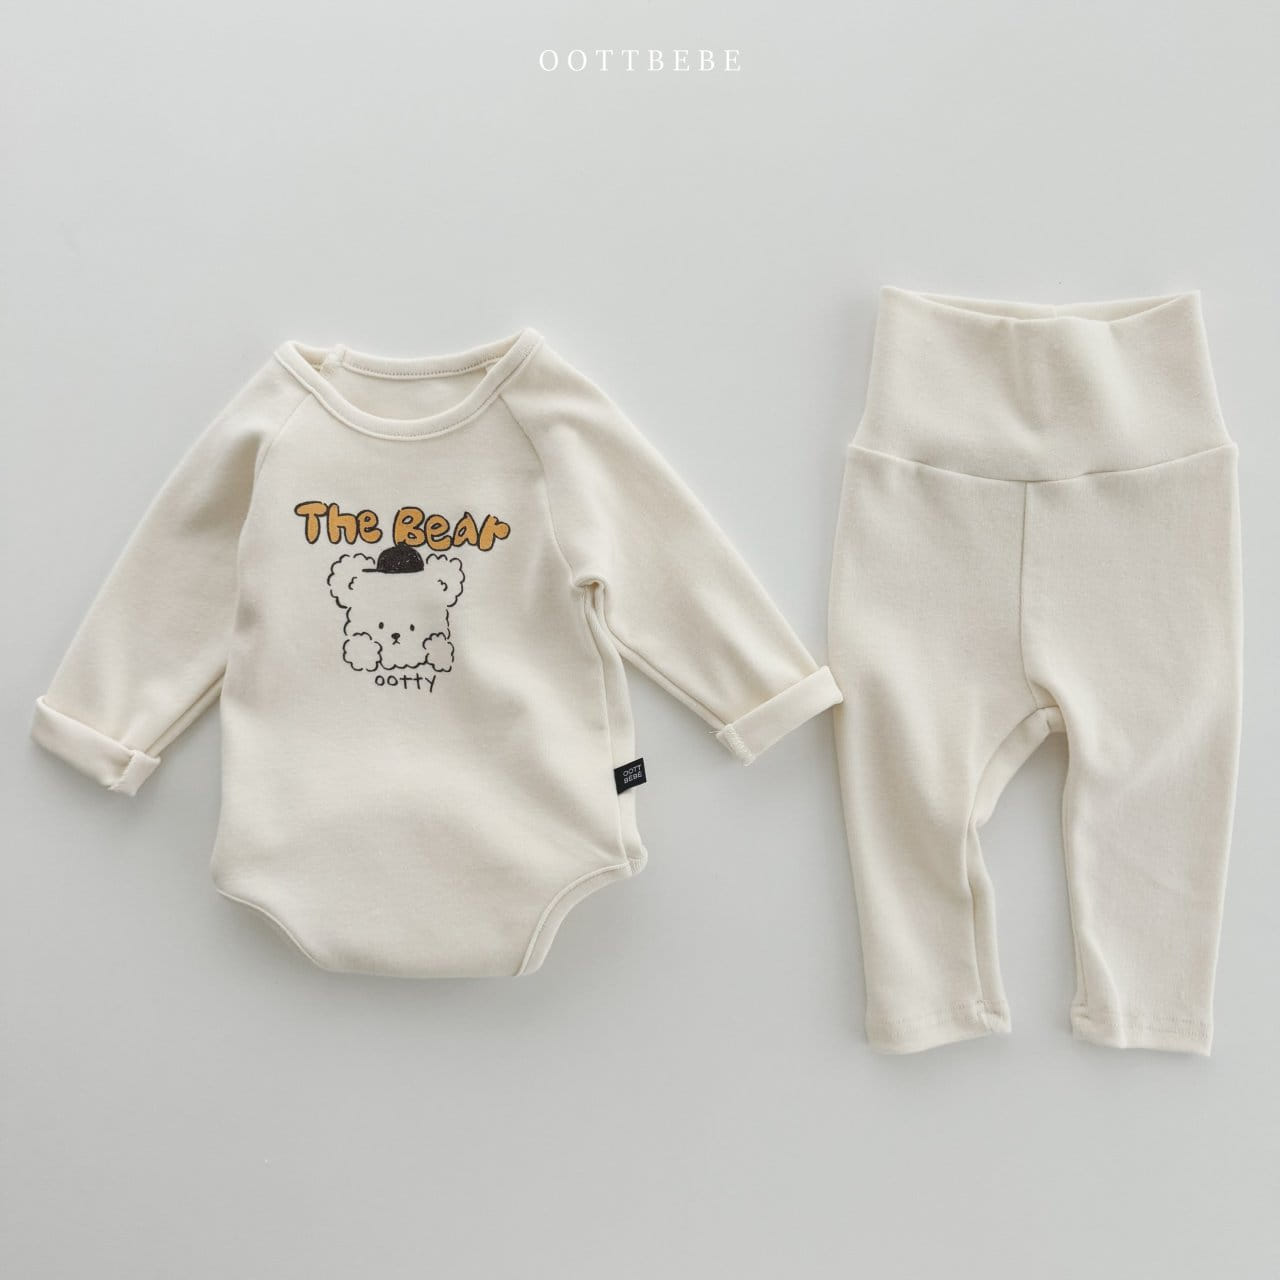 Oott Bebe - Korean Baby Fashion - #babyclothing - Drawing Bodysuit Leggings Set - 9